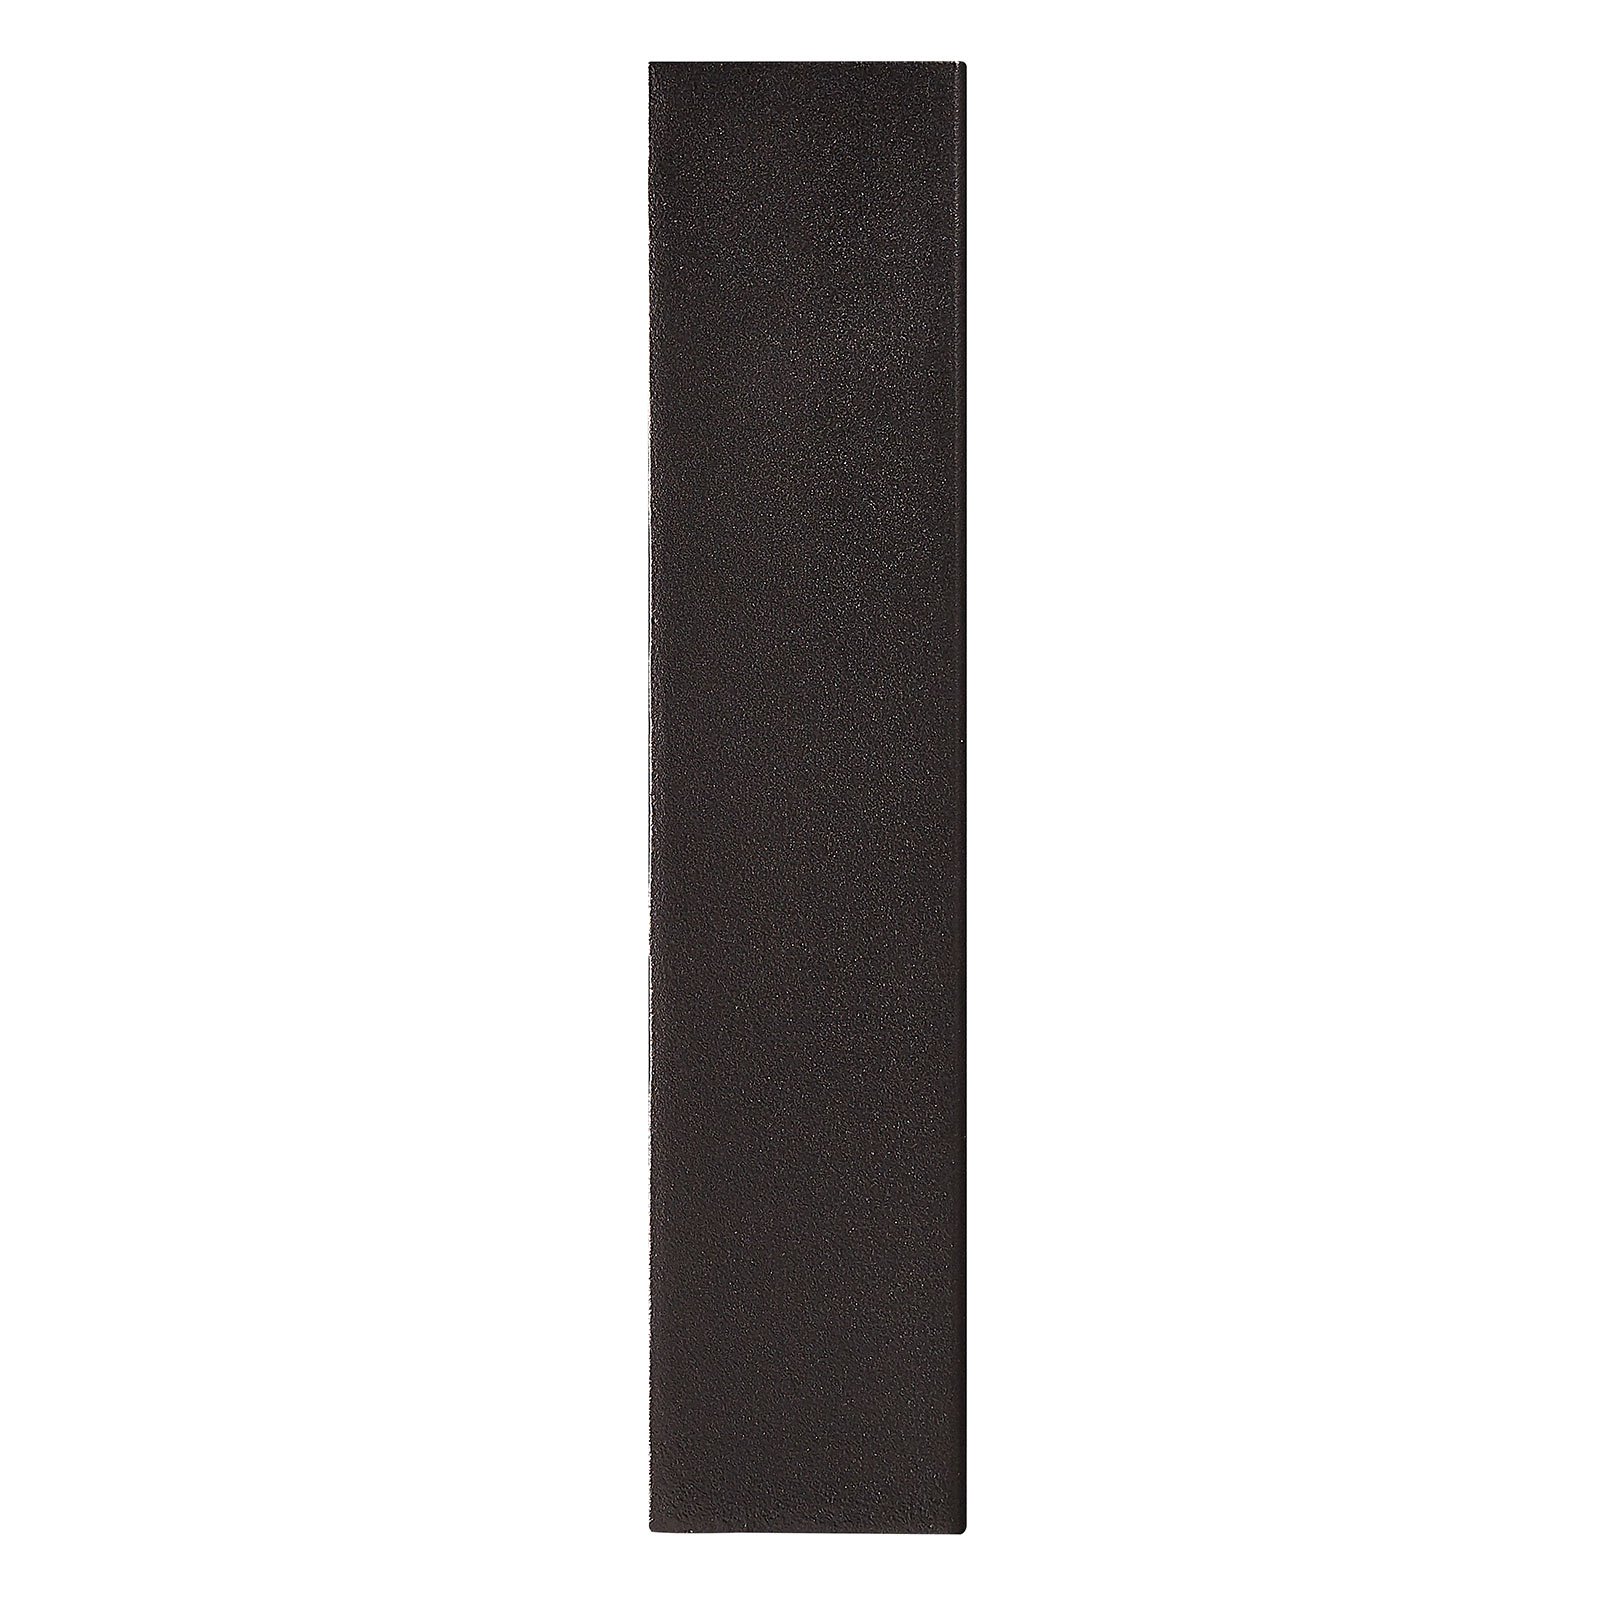 Aplique LED de exterior Fold, 15 x 21 cm, negro